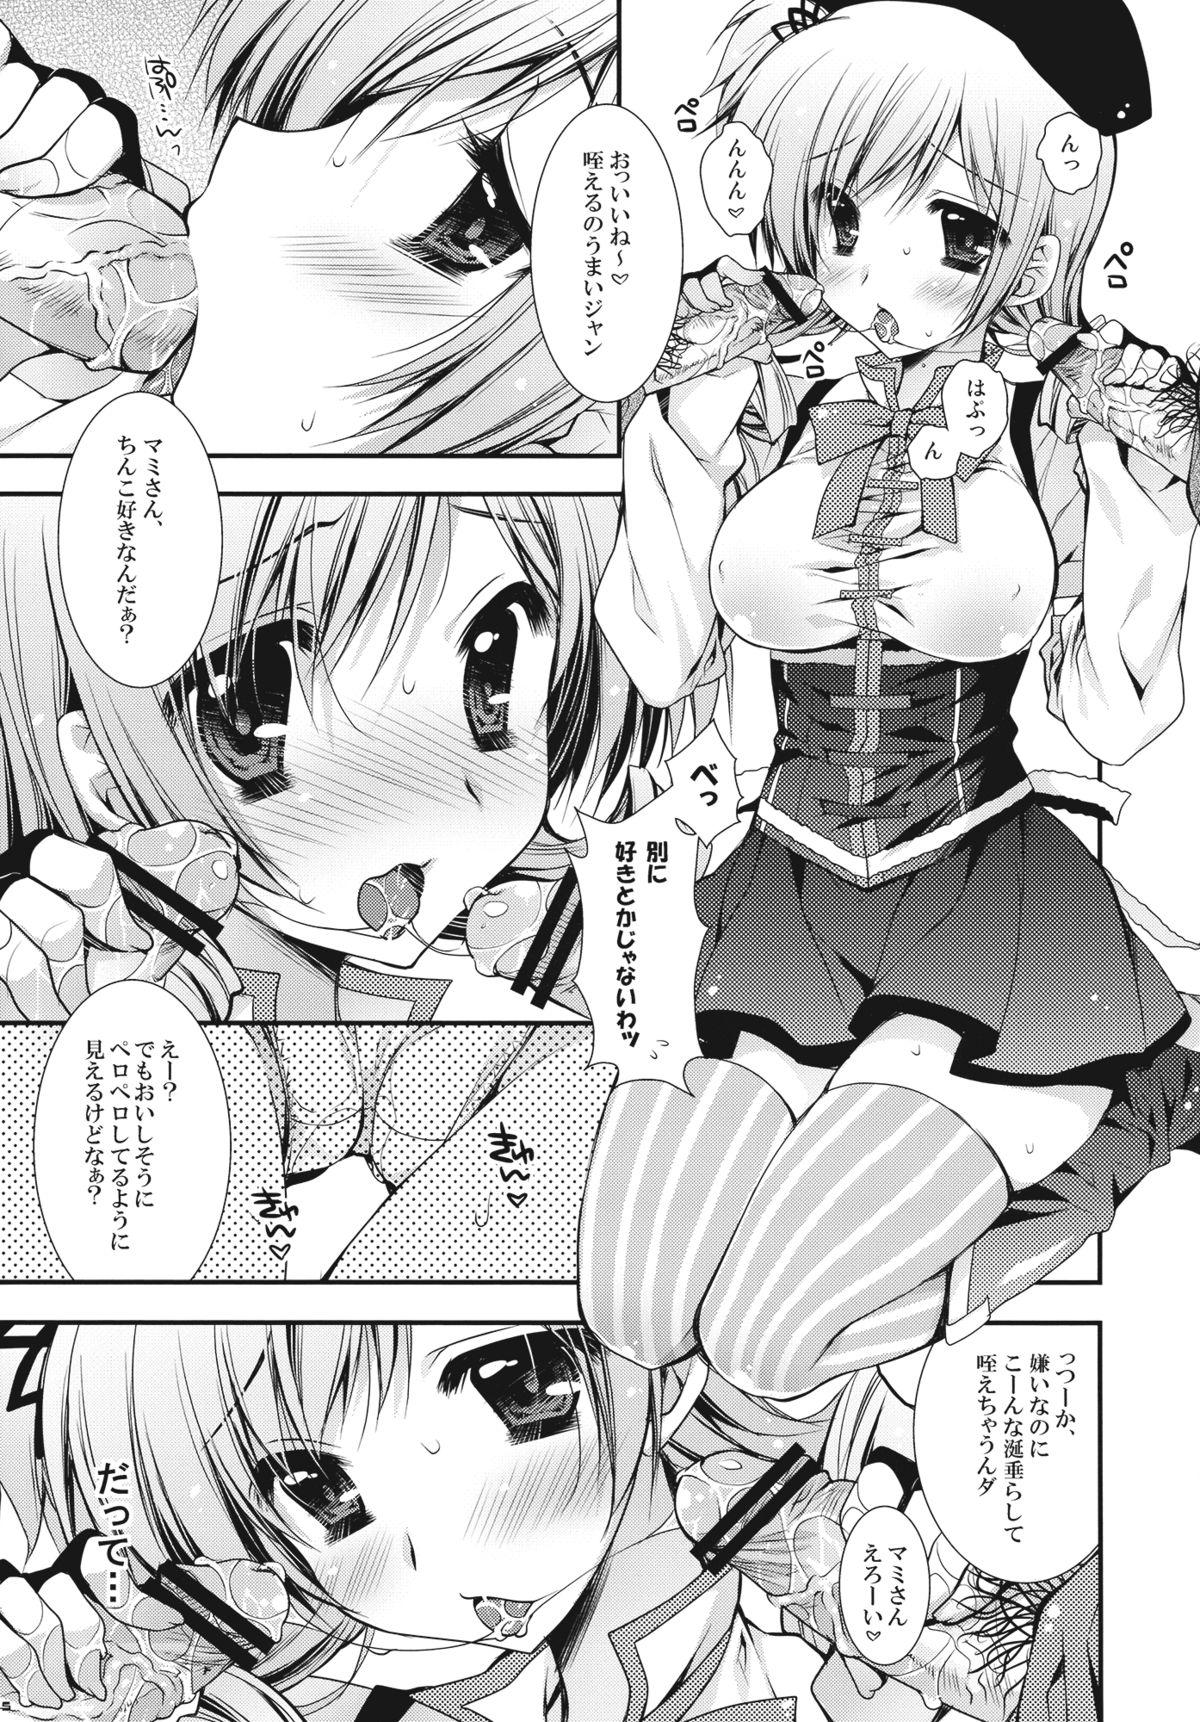 Cute Anata no Tamari kit ta Sourujemu Watashi ga Jouka Shi te age temo iiyo ? - Puella magi madoka magica Cameltoe - Page 5